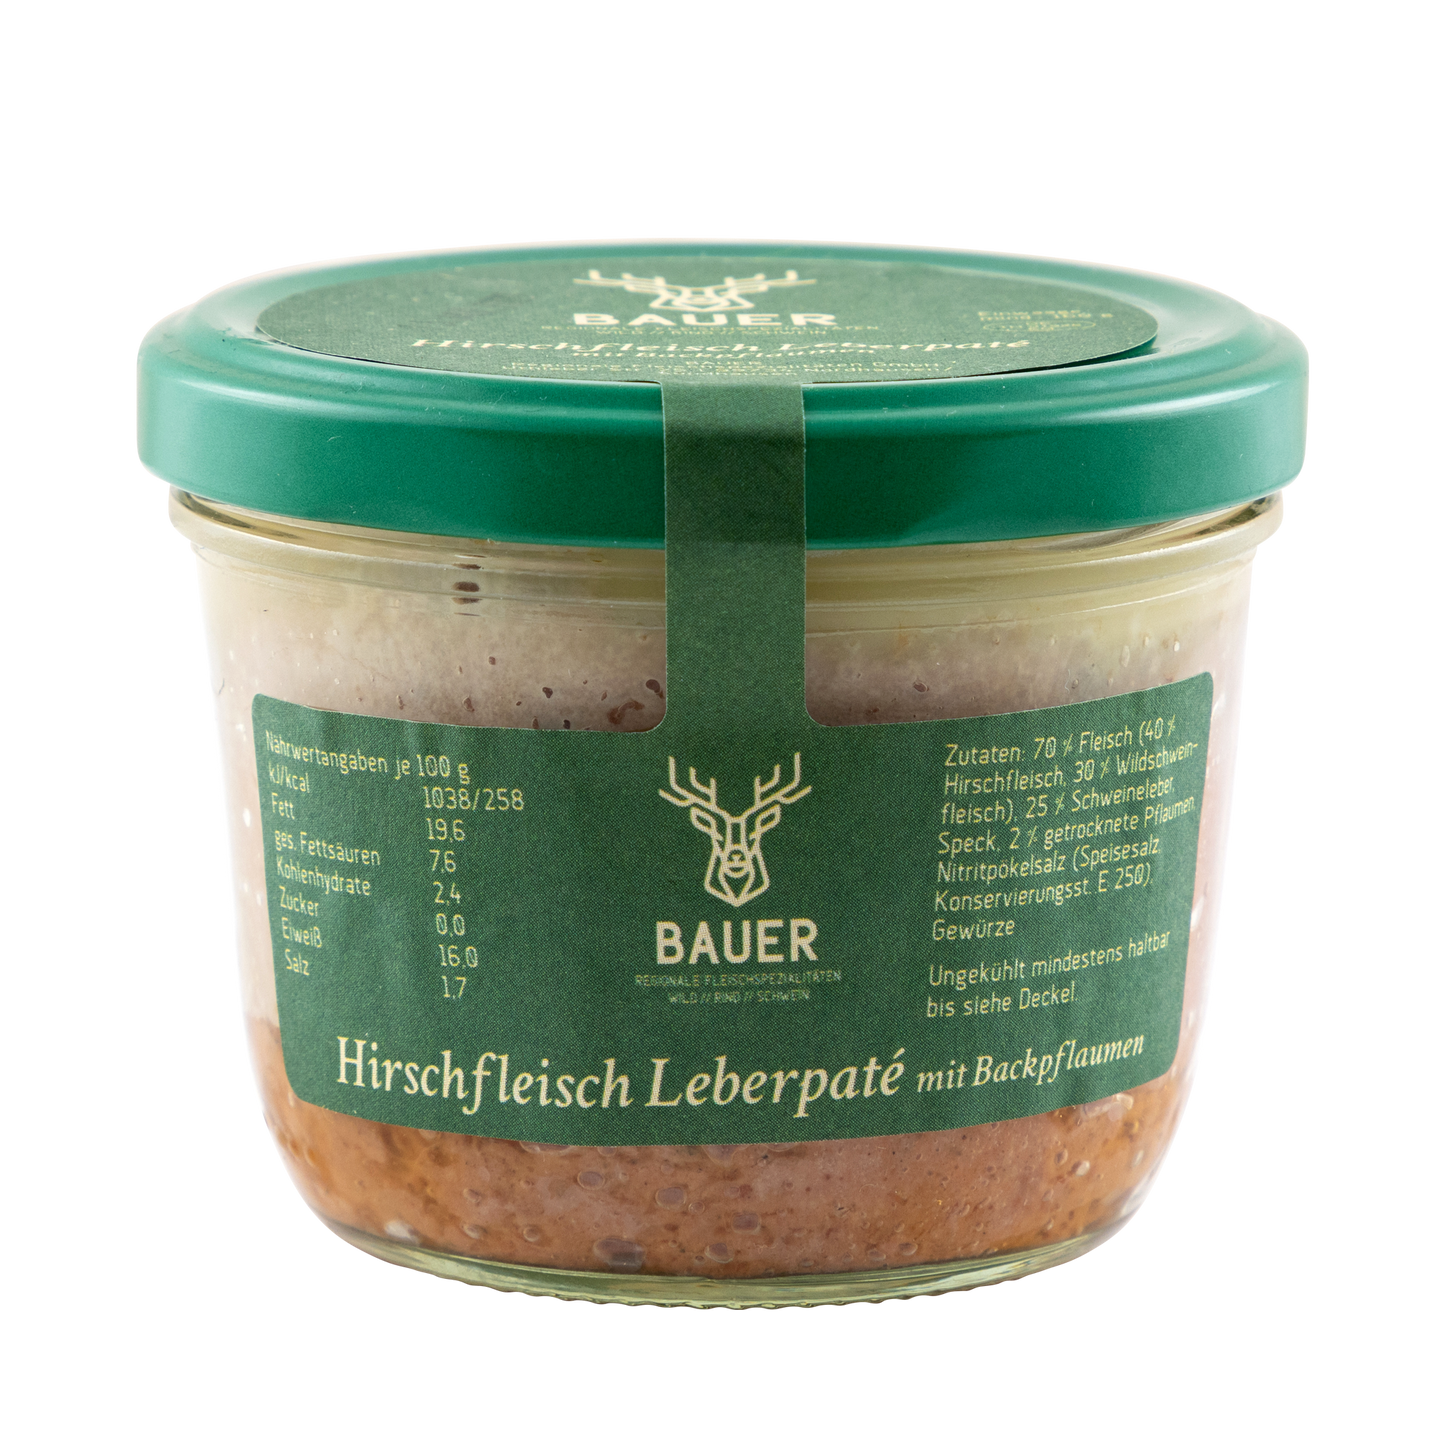 Hirschfleisch-Leberpaté mit Backpflaumen